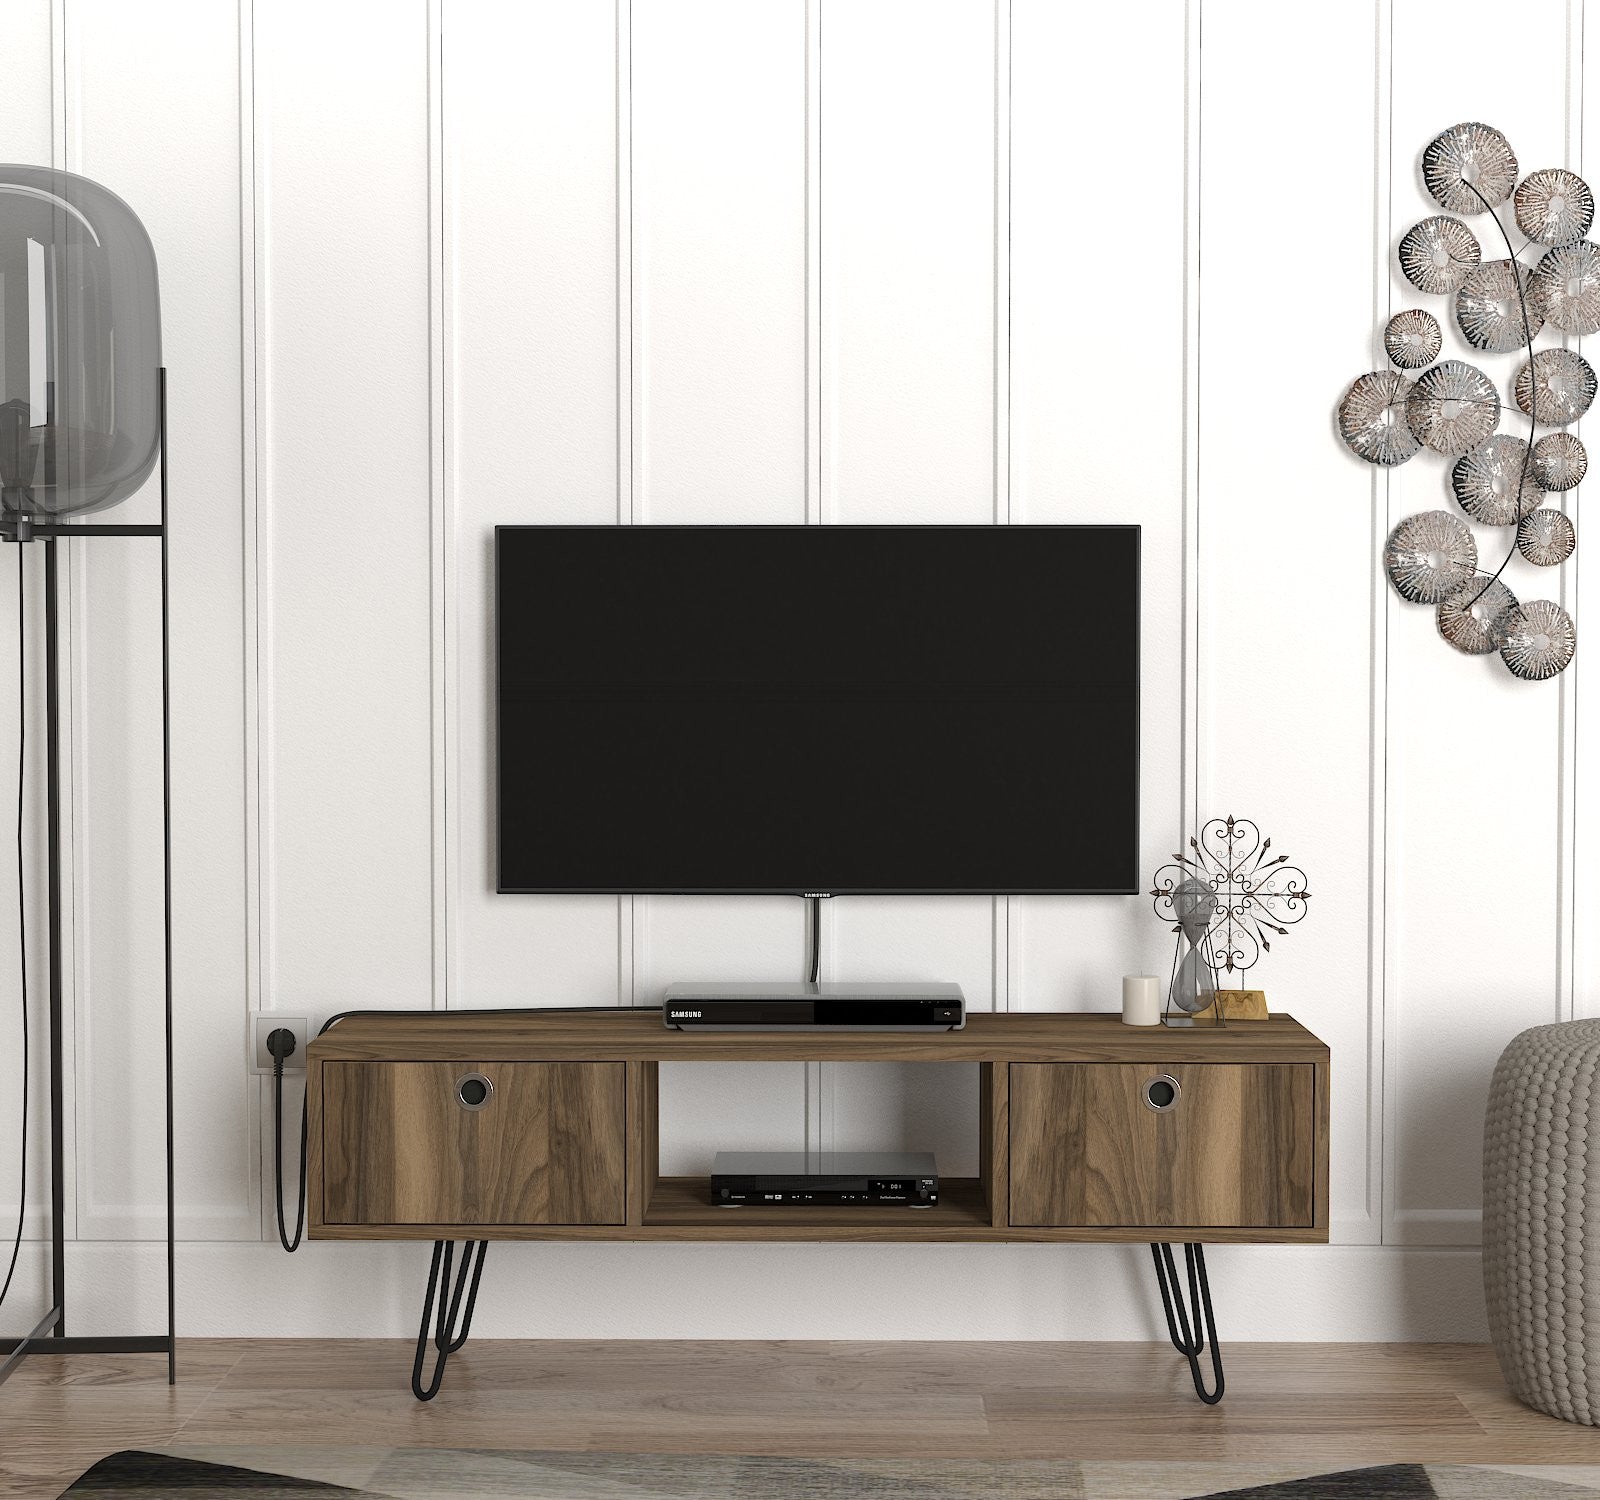 Porta tv piccolo moderno in legno colore noce gambe in metallo – Colly Shop